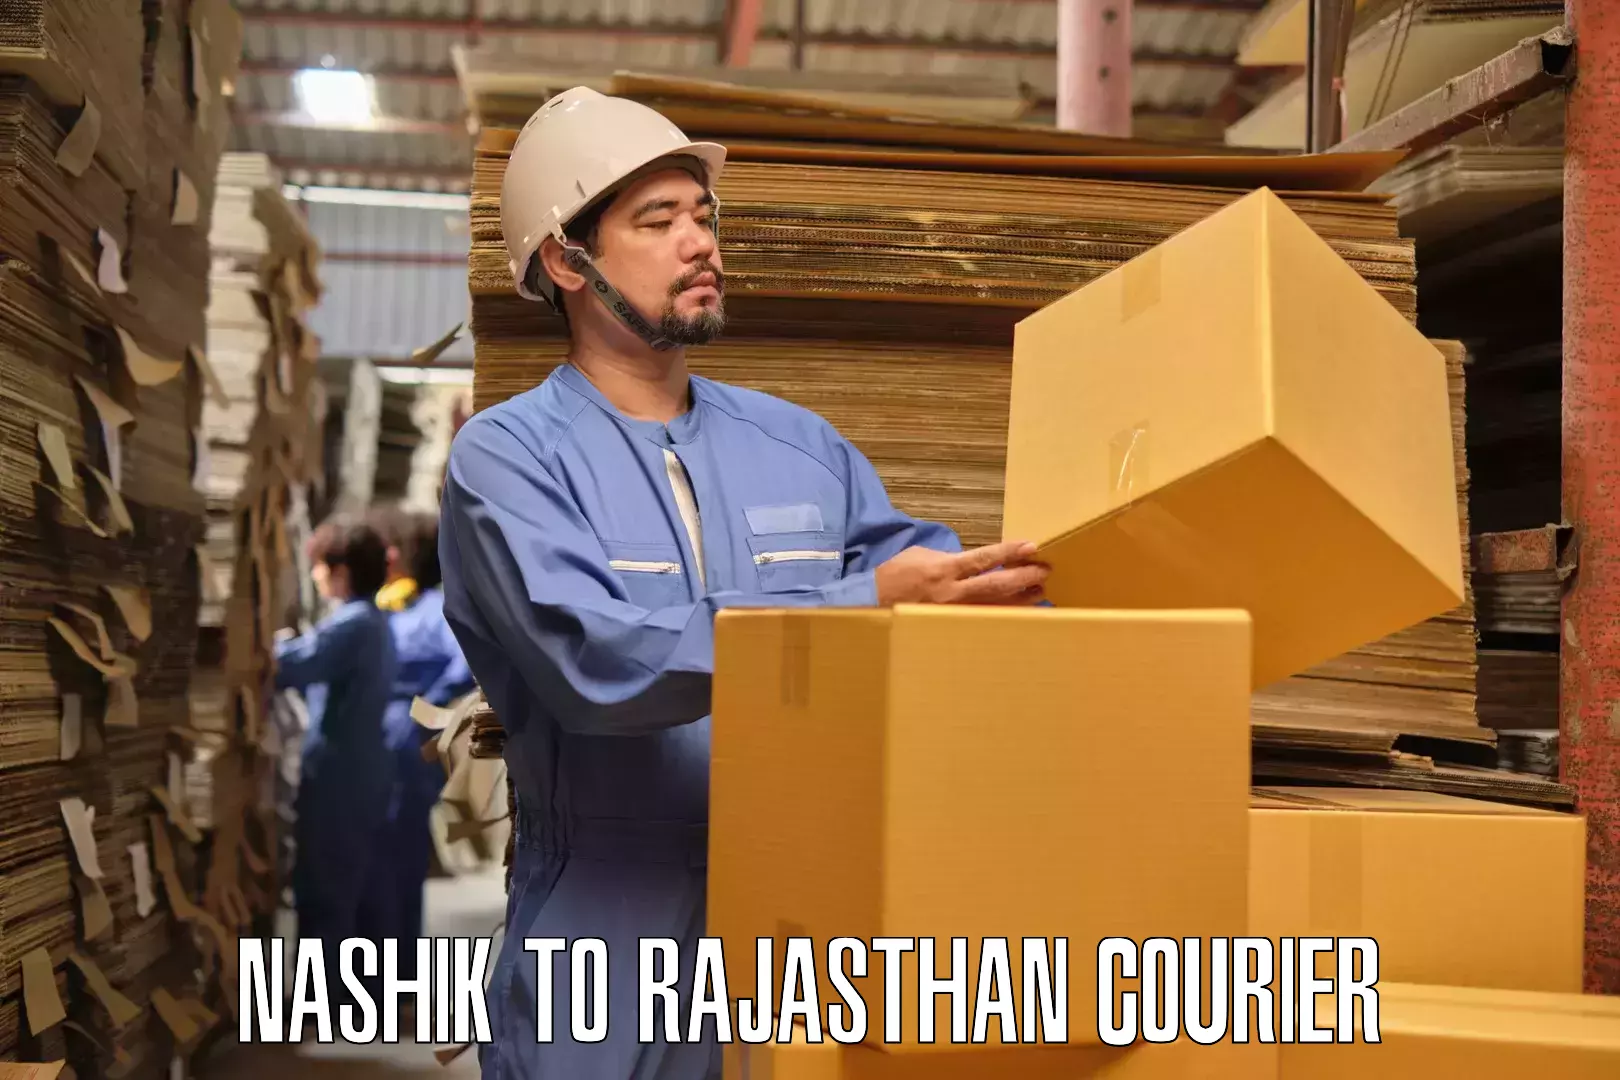 Furniture moving experts Nashik to Bandikui